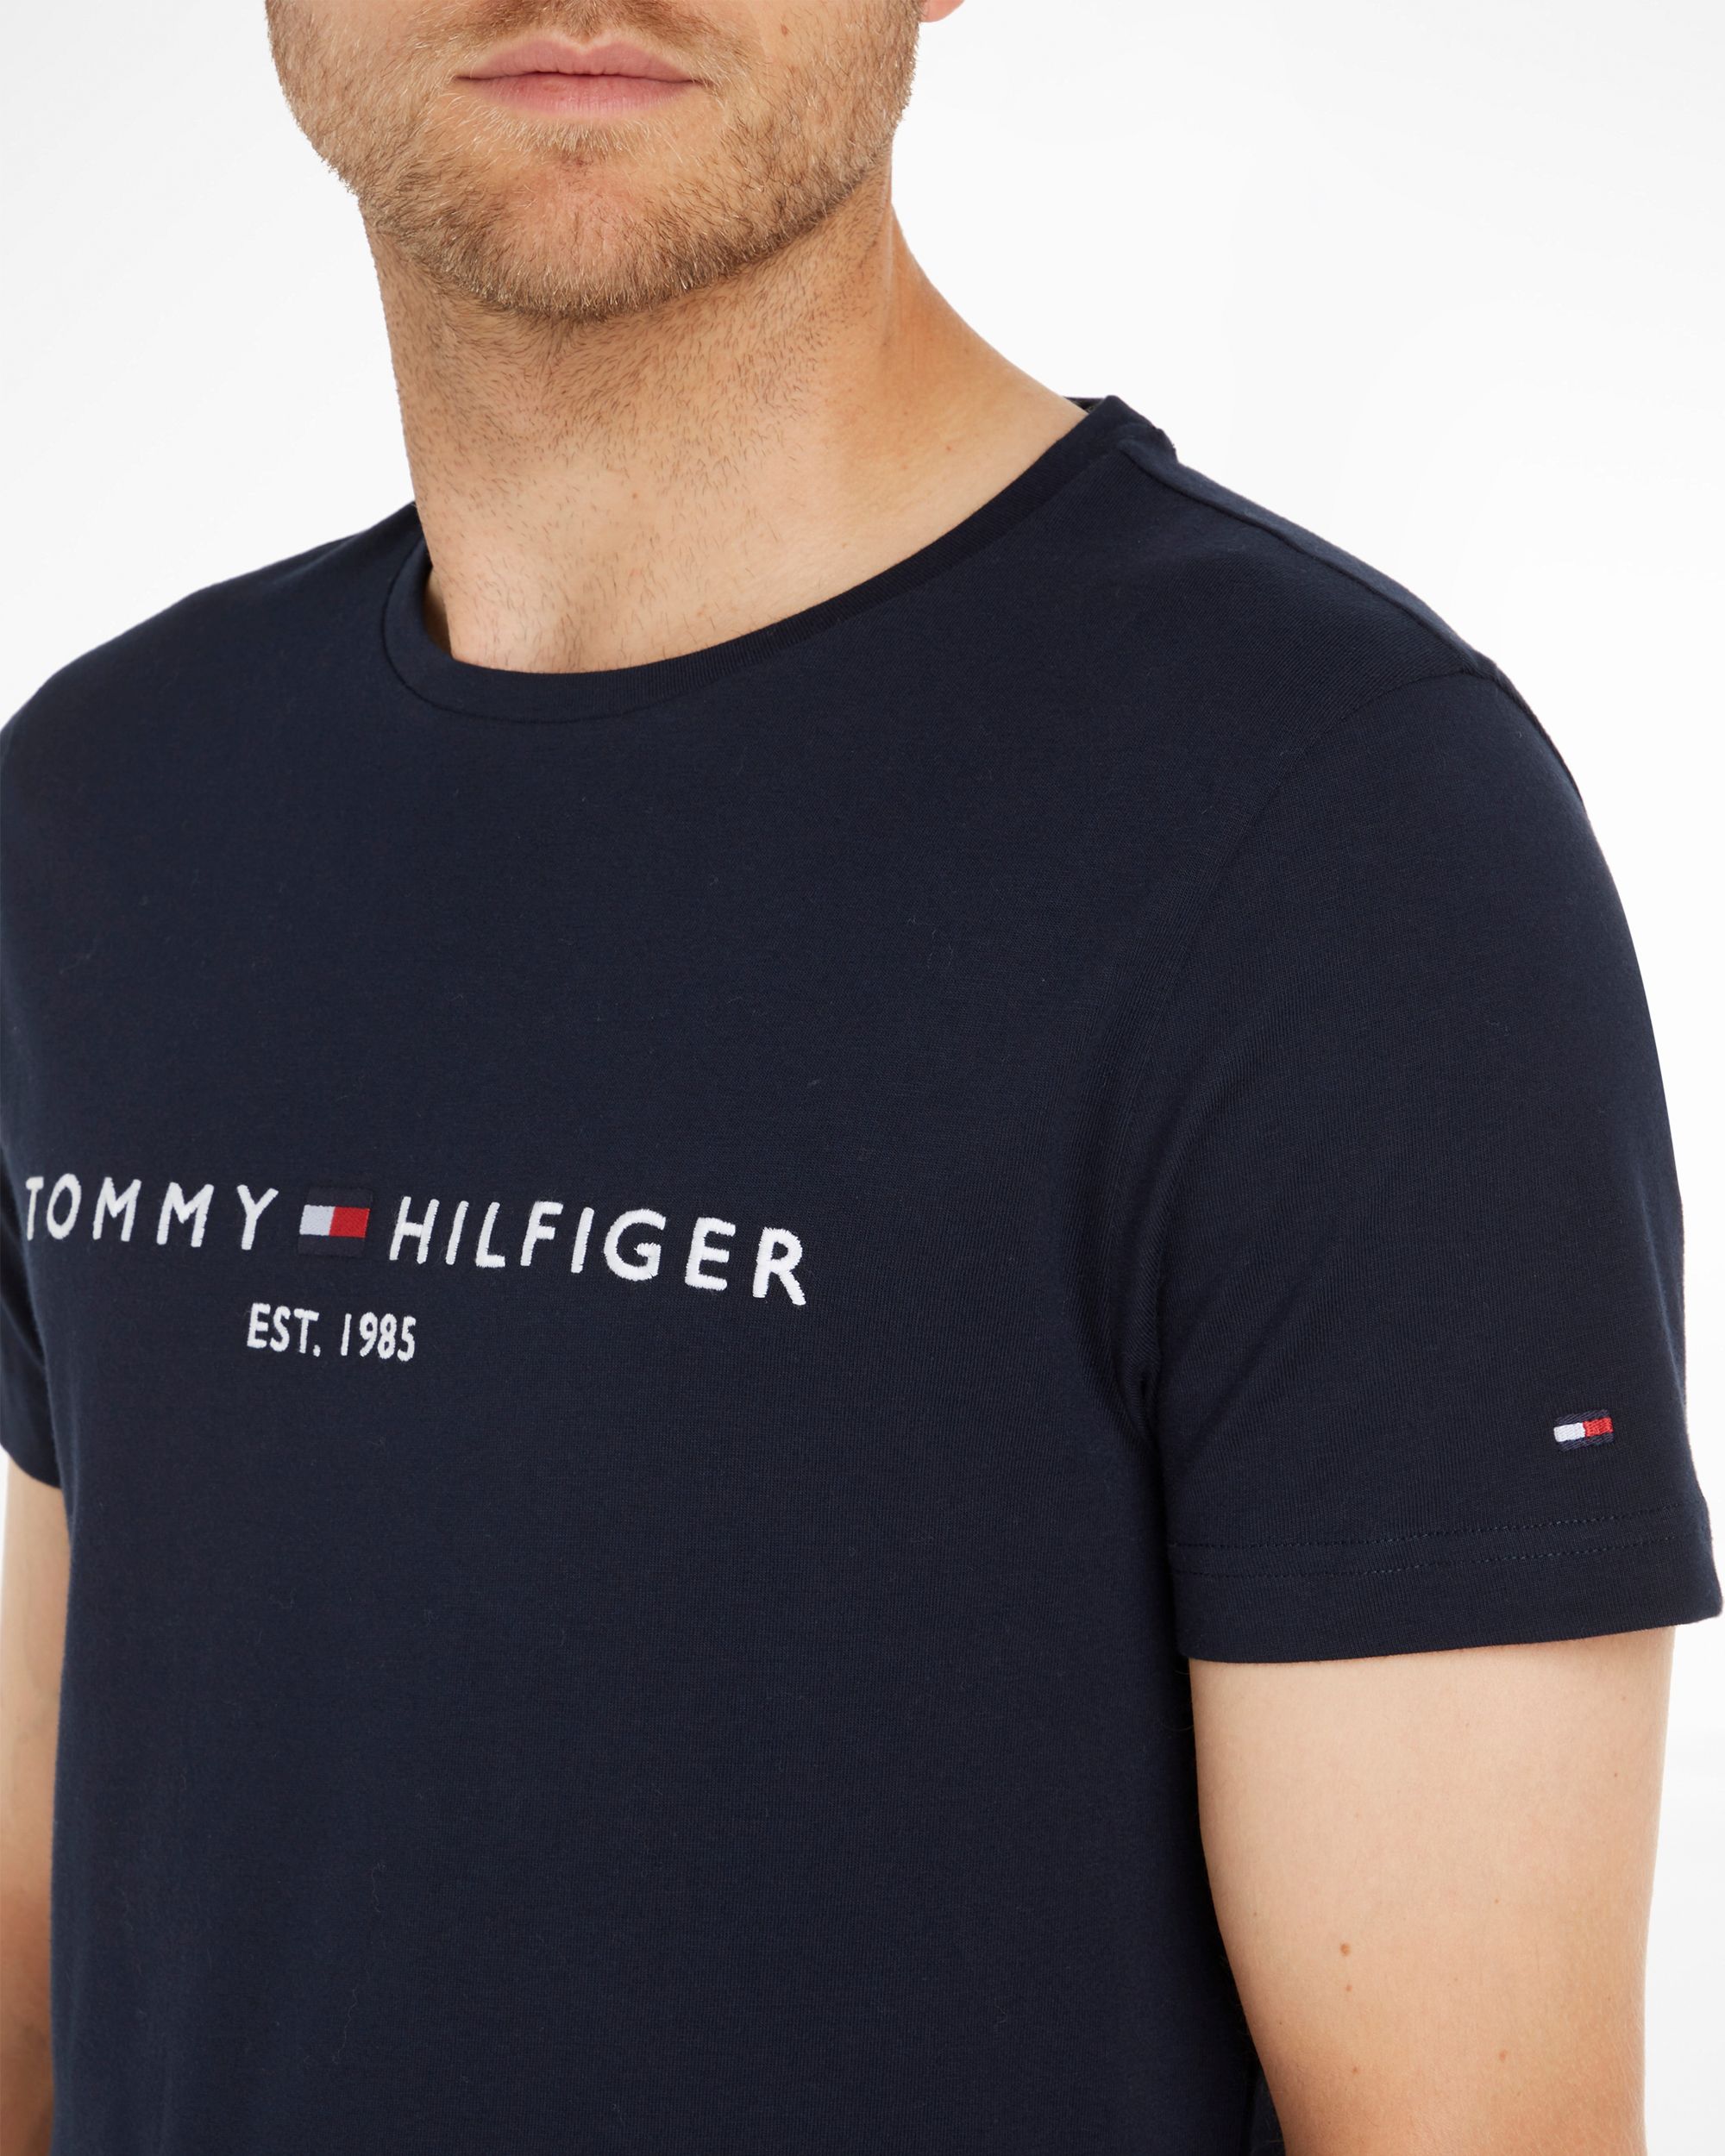 Tommy Hilfiger Menswear T-shirt KM Donker blauw 086989-001-L